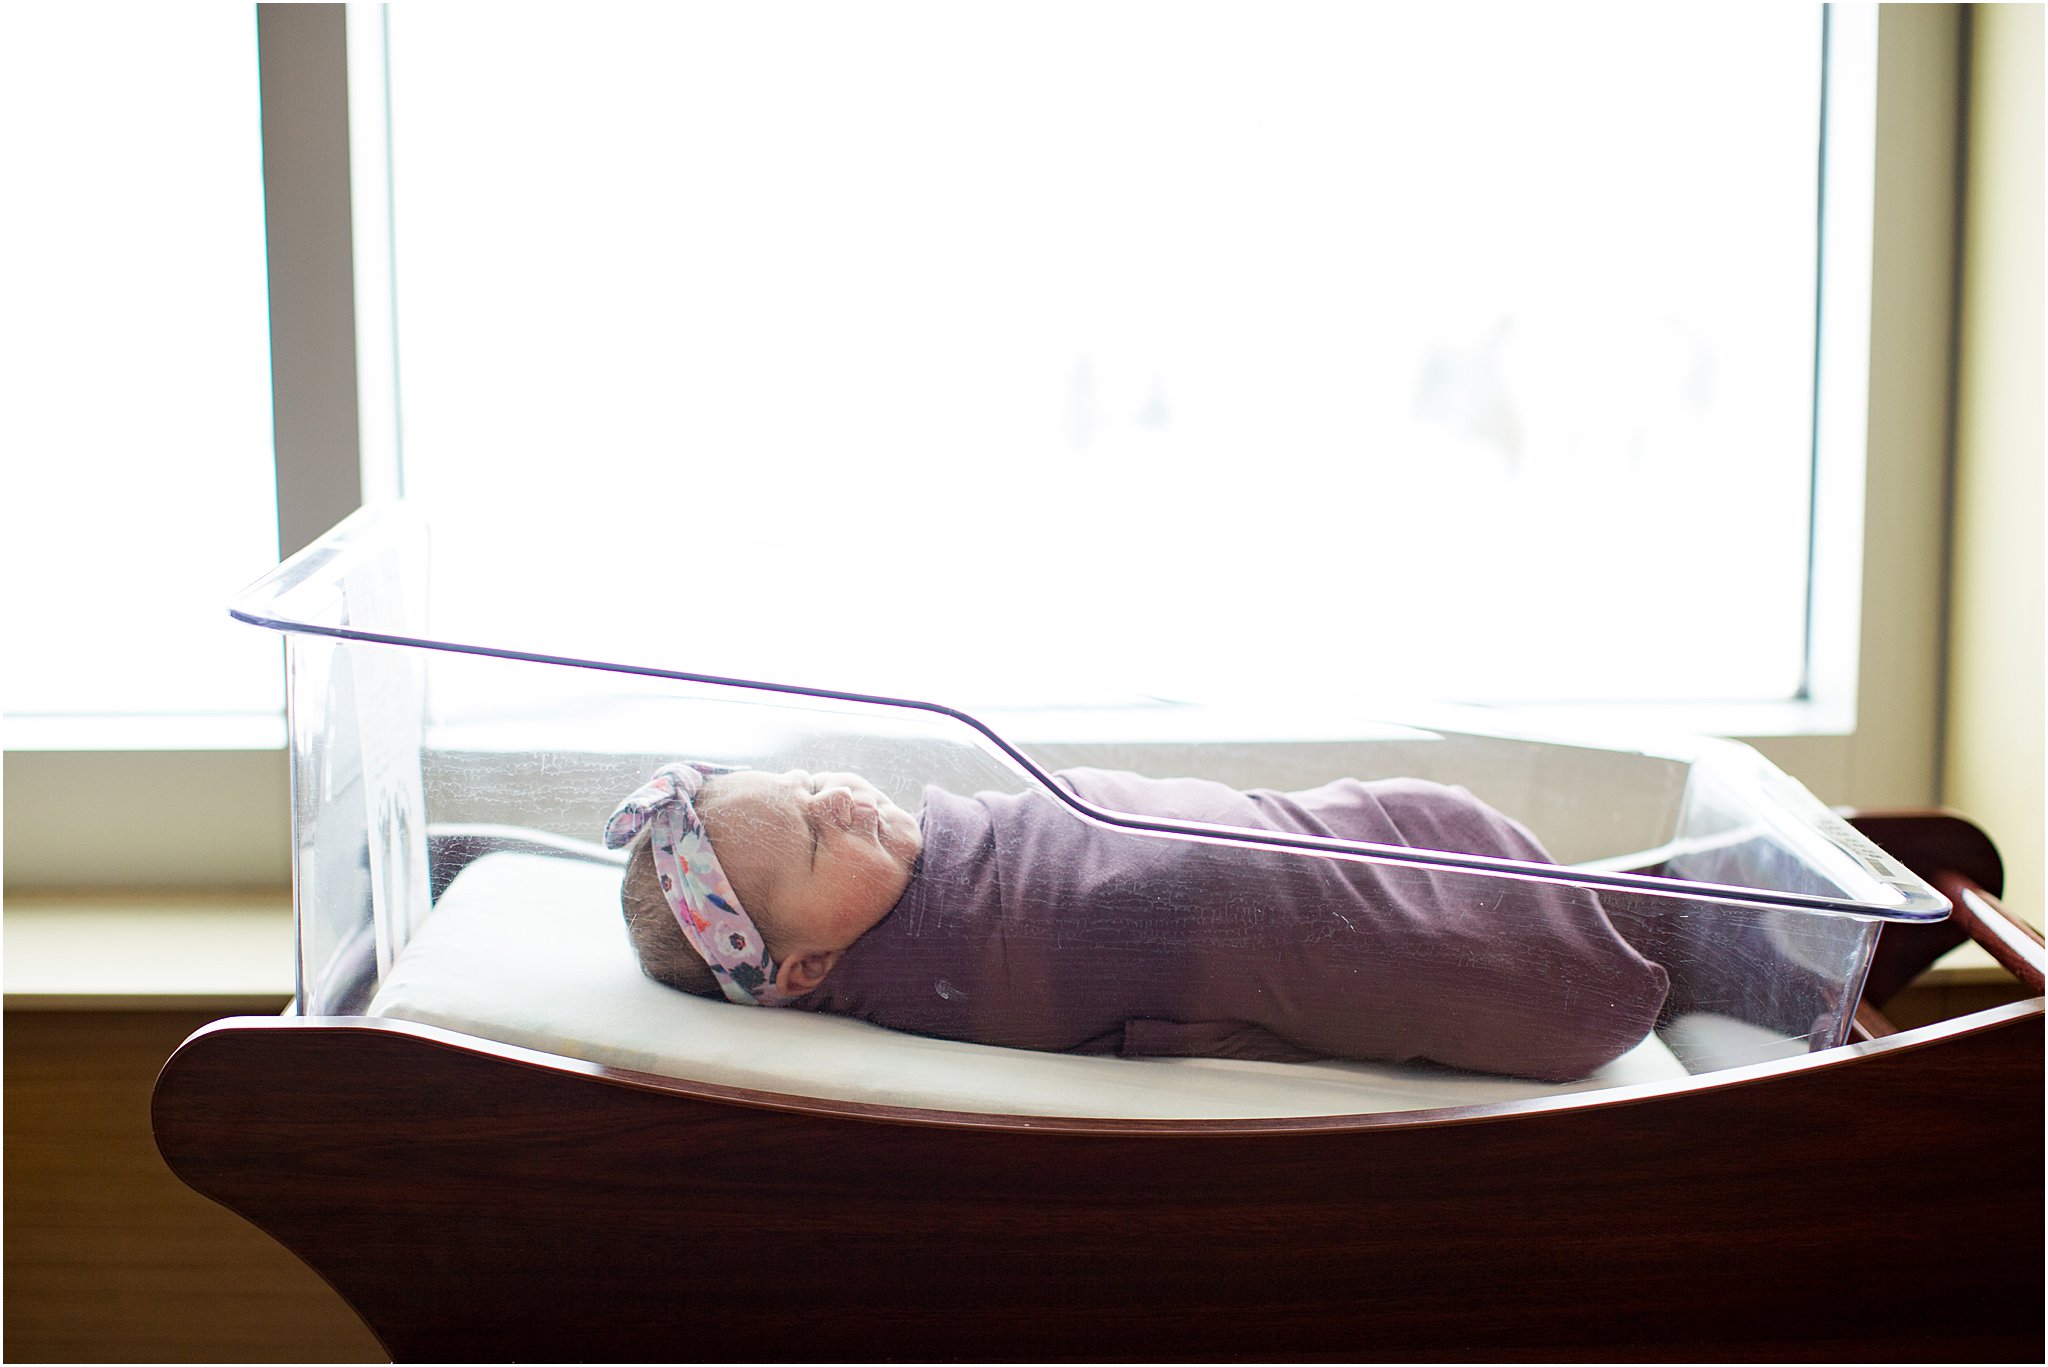 baby girl in hospital bassinet swaddled